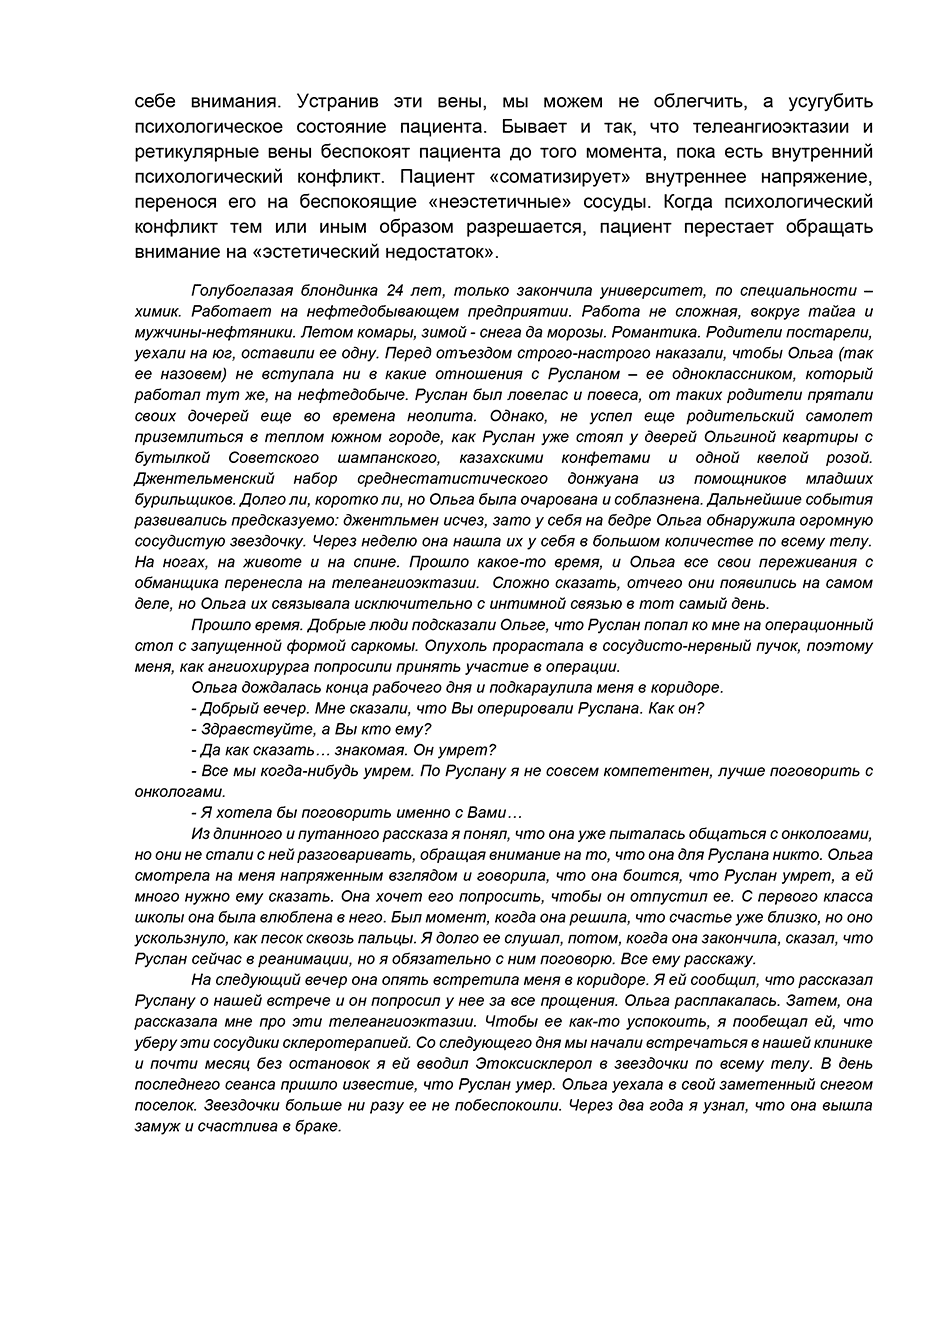 Пример страницы из книги  "Склеротерапия вен" - Мазайшвили К. В., Акимов С. С.